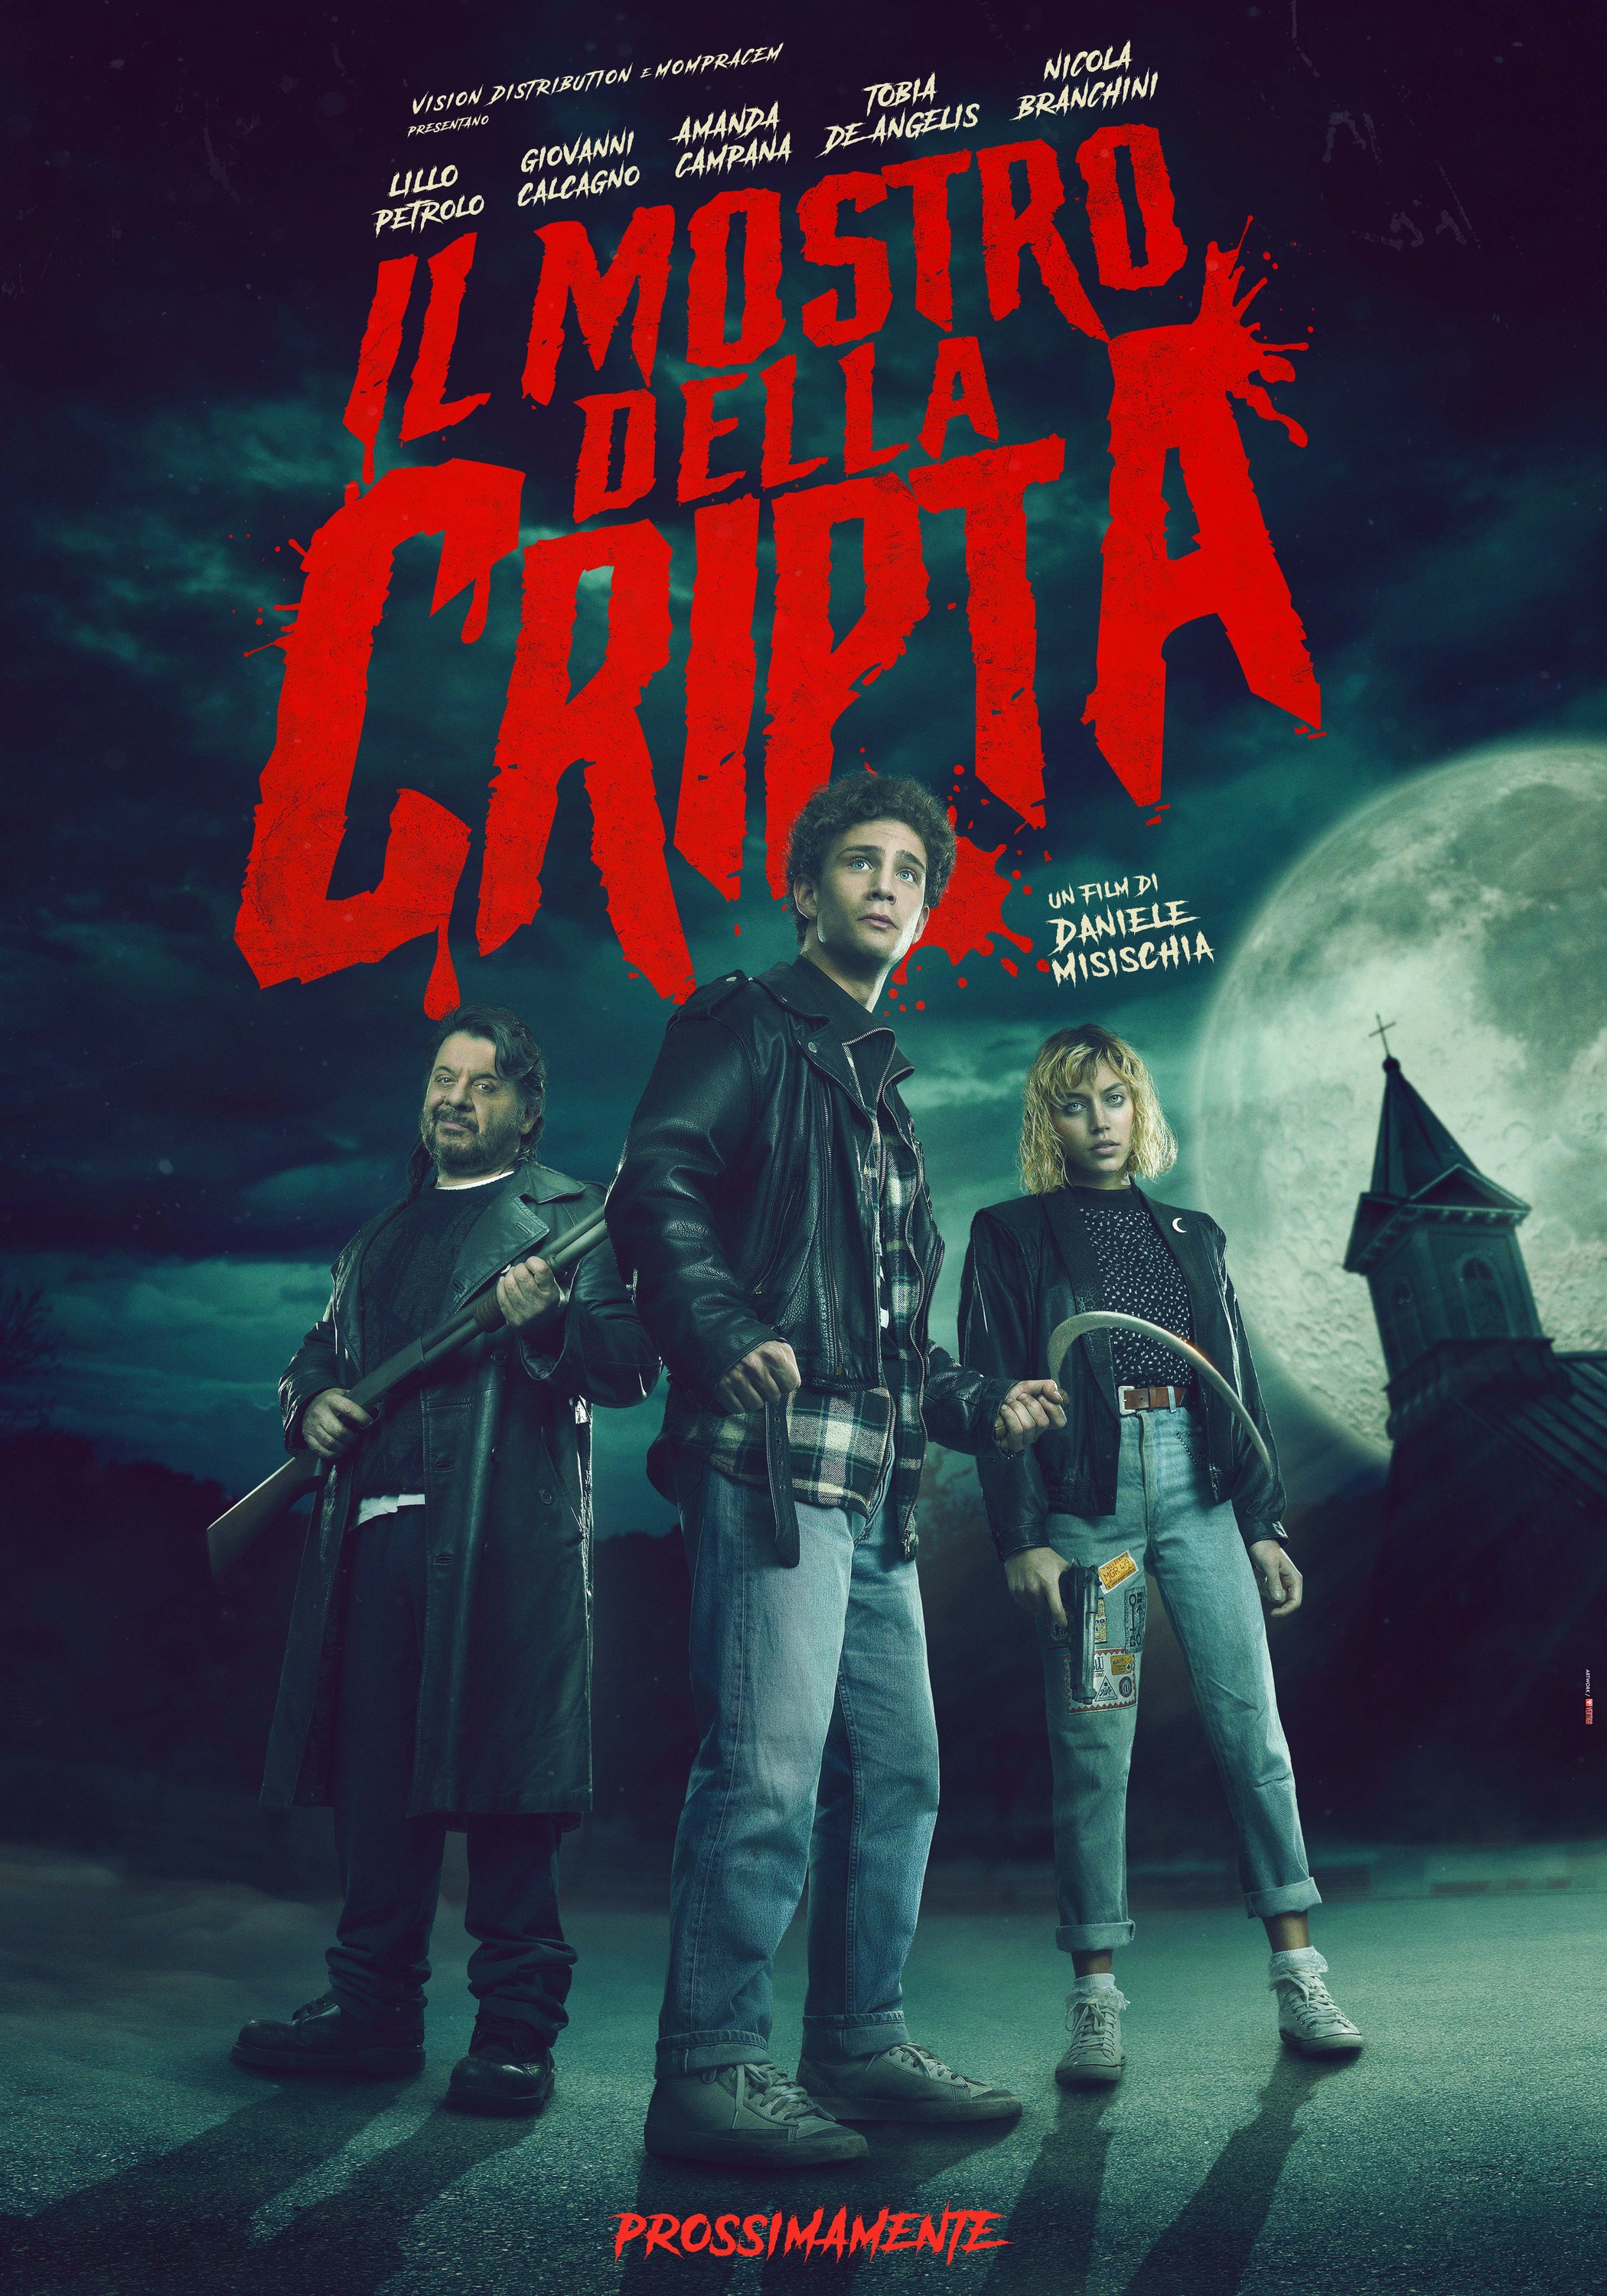 Mega Sized Movie Poster Image for Il mostro della cripta 